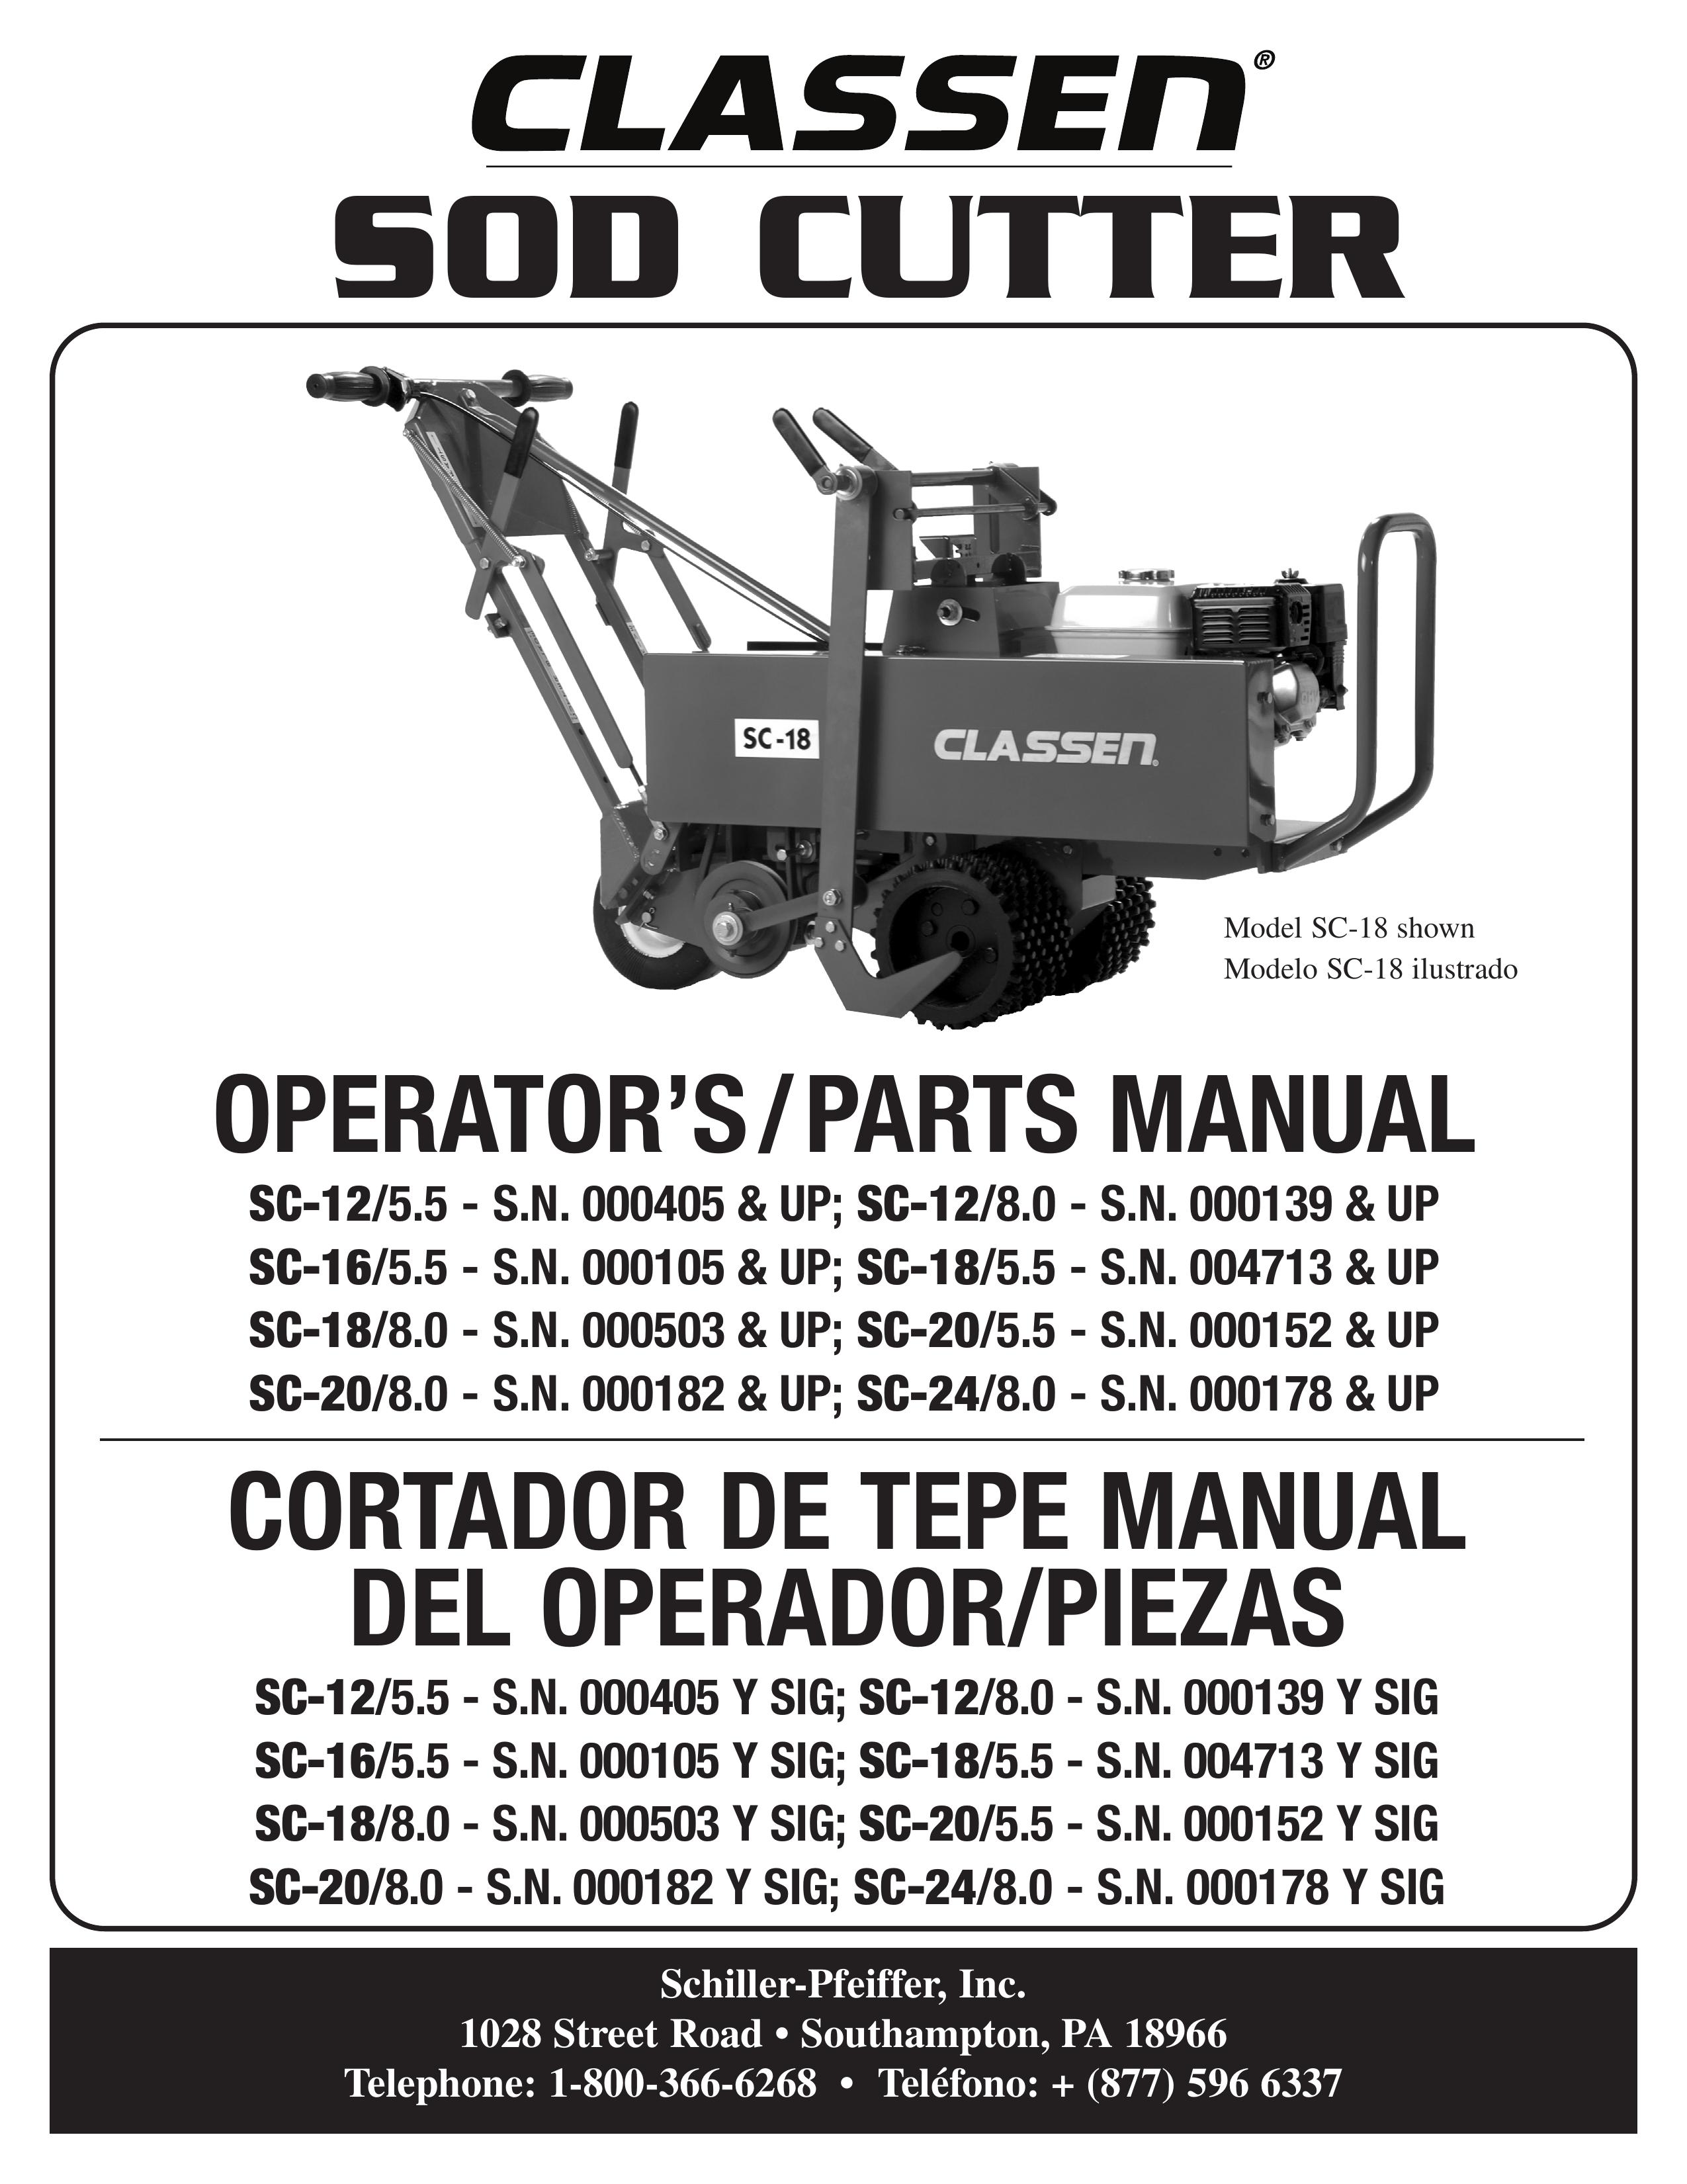 Classen SC-20/5.5 Brush Cutter User Manual